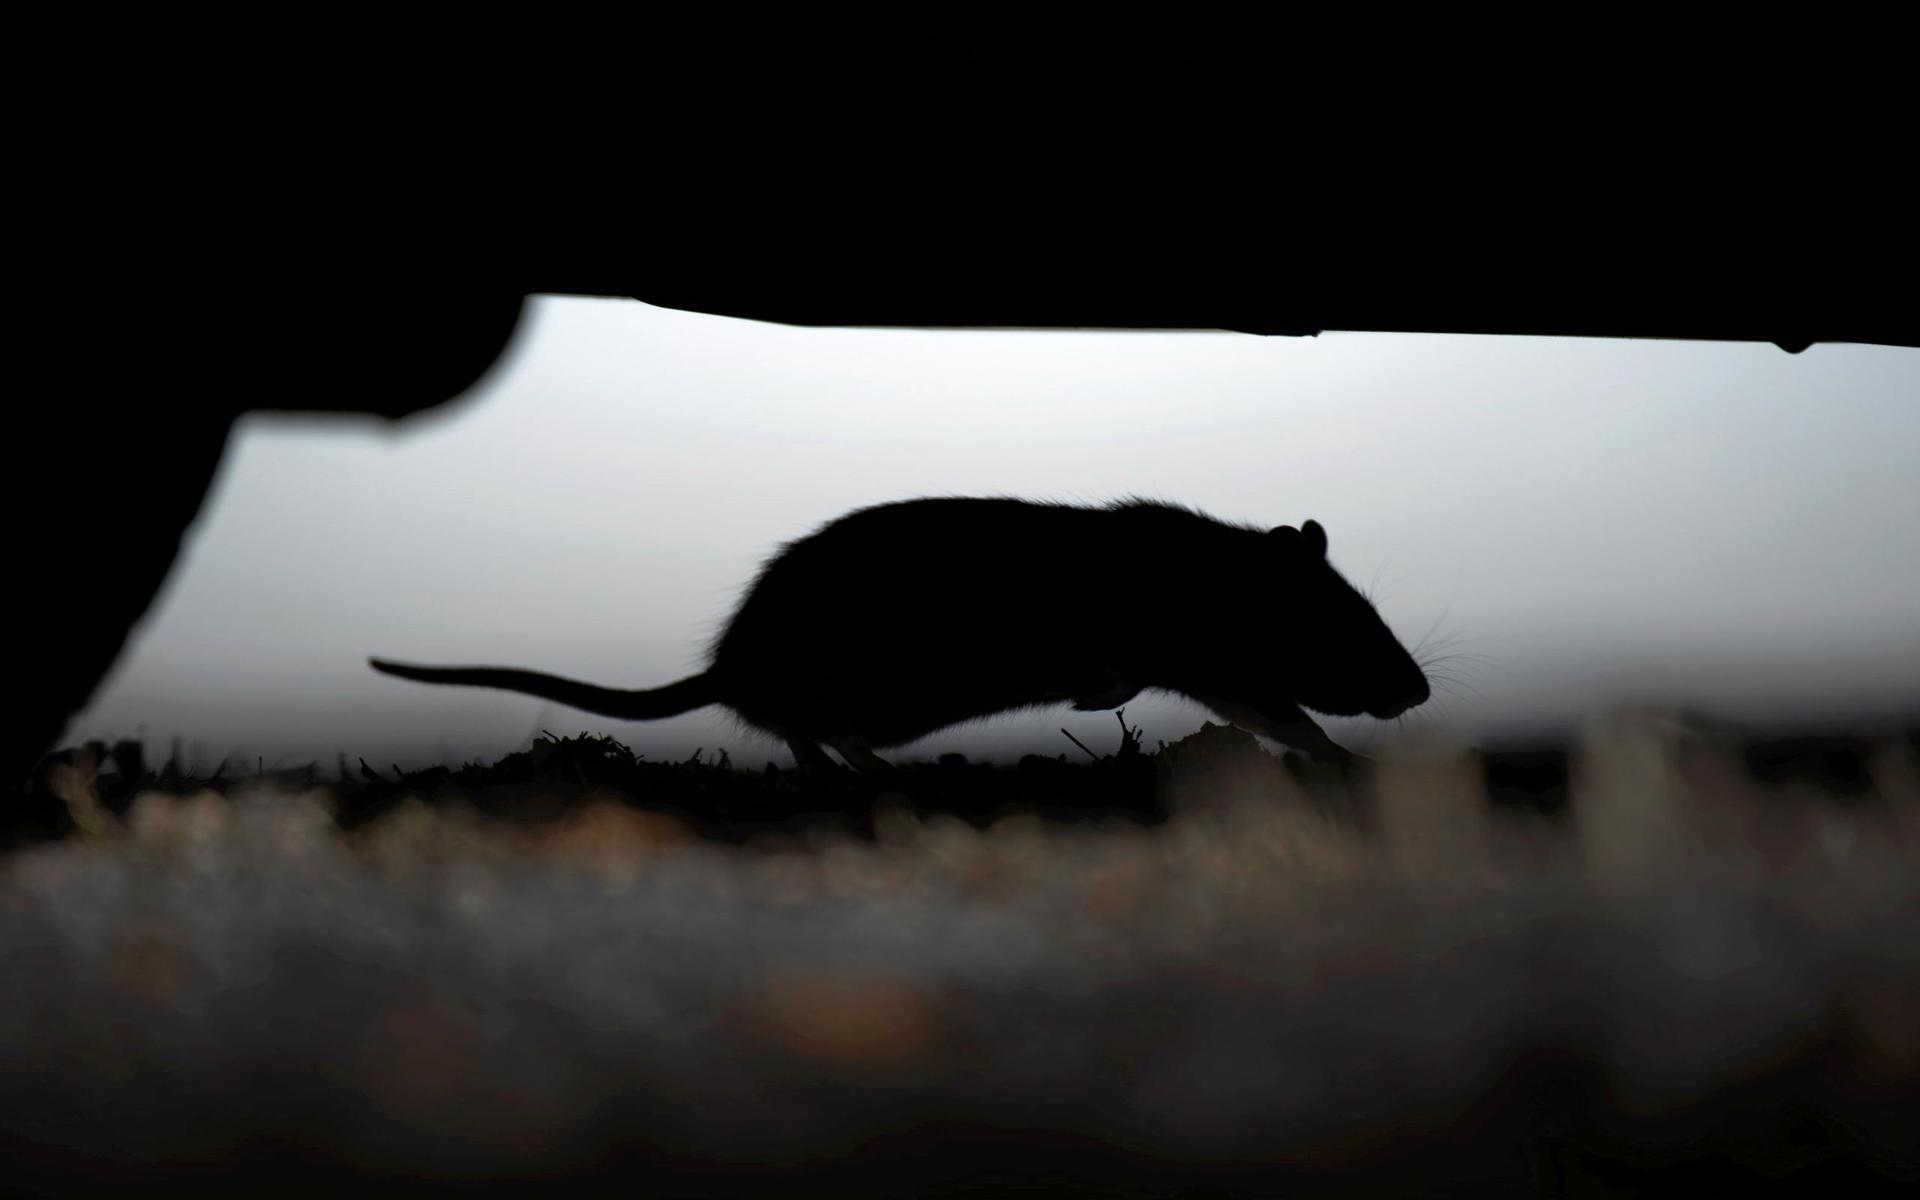 En råtta springer under en bil mitt på dagen, mitt i stan. 